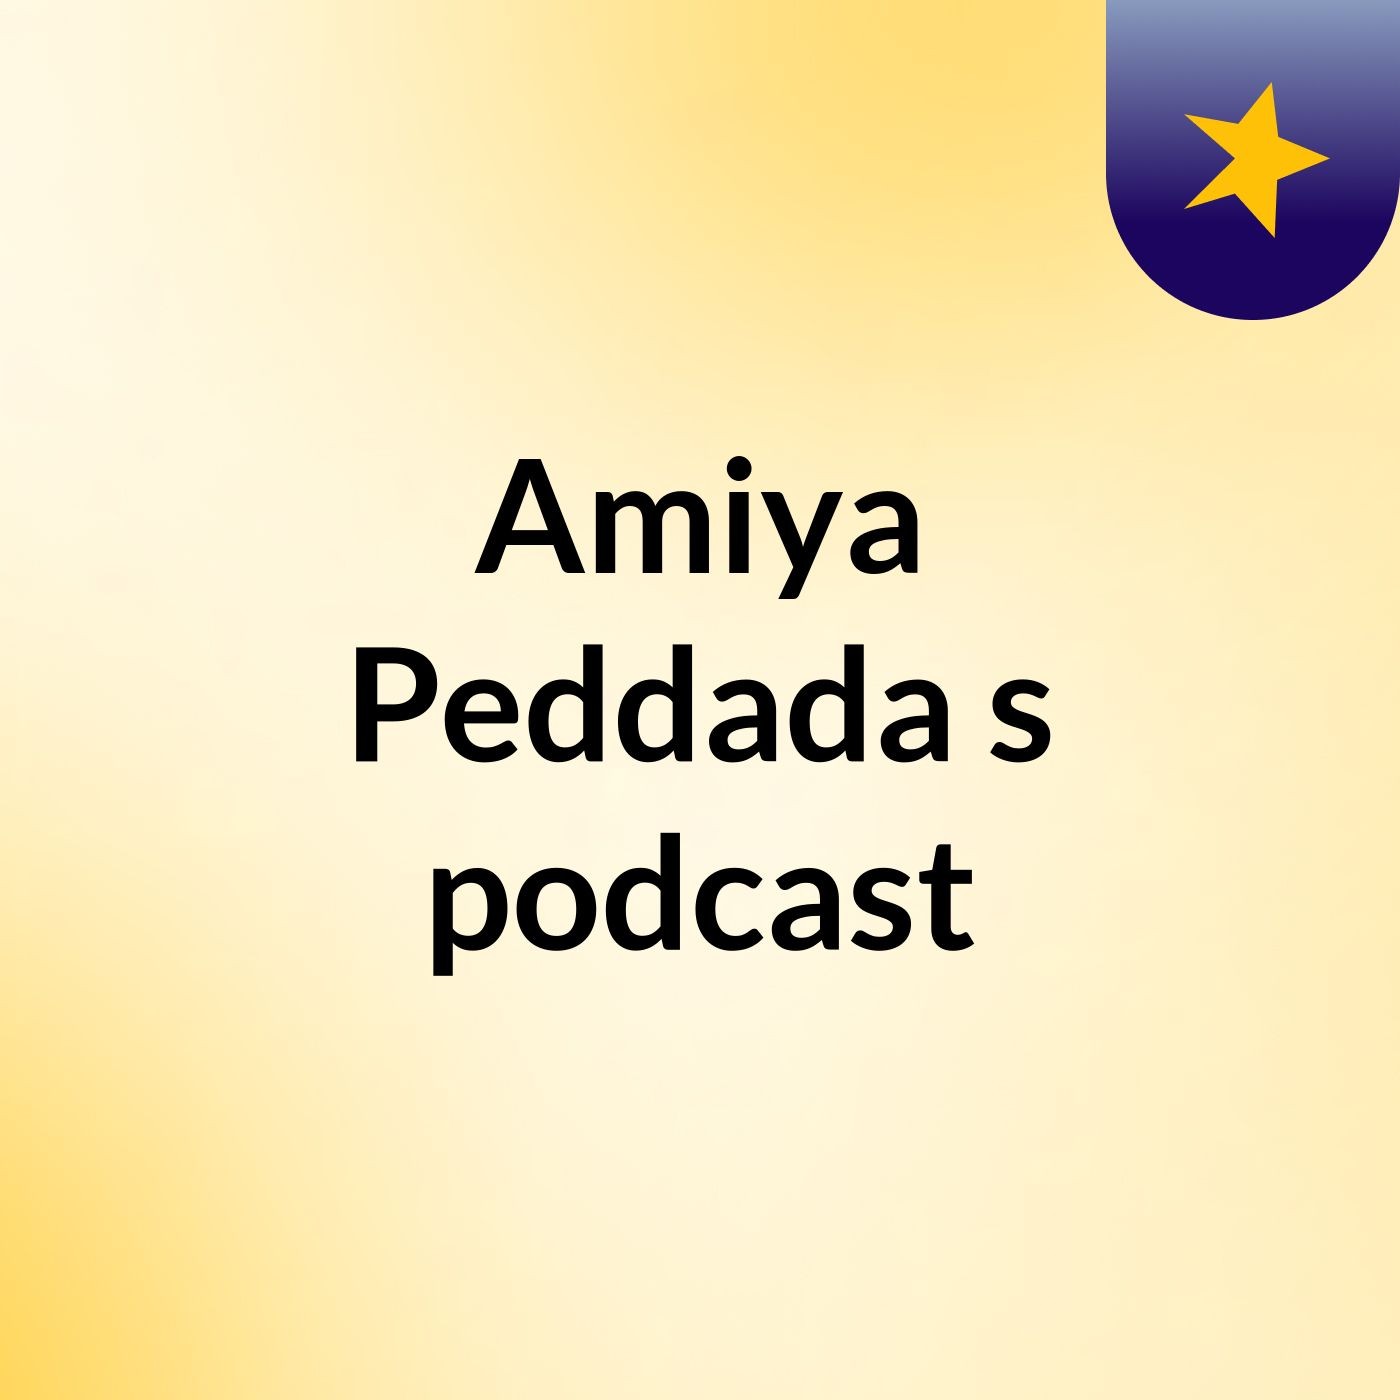 Amiya Peddada's podcast